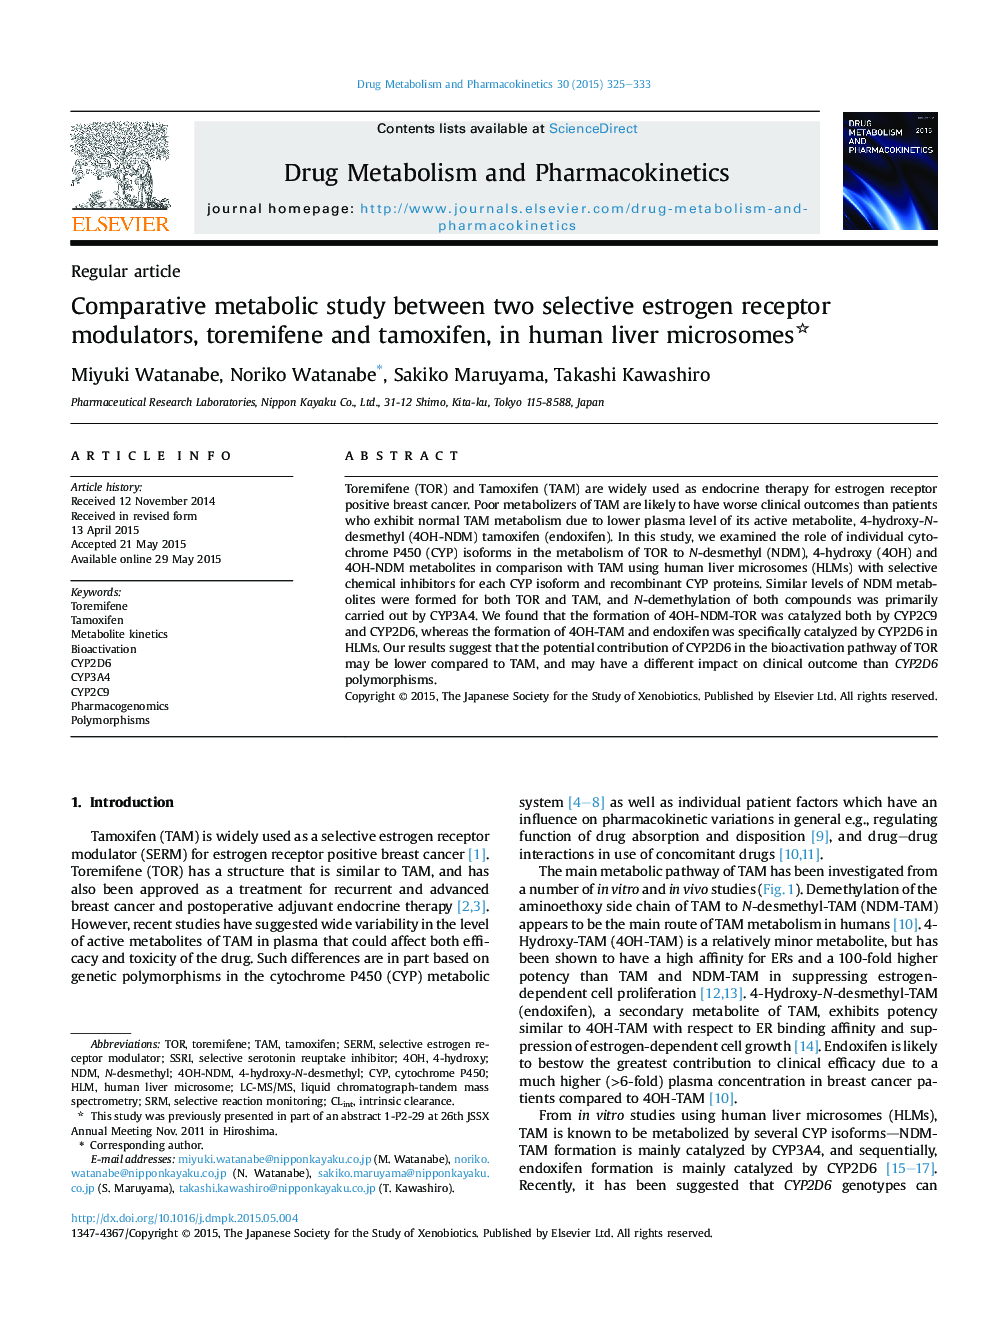 بررسی متابولیکی مقایسه شده بین دو مولکول گیرنده استروژن، ترمیفن و تاموکسیفن در میکروسوم های کبدی انسانی 